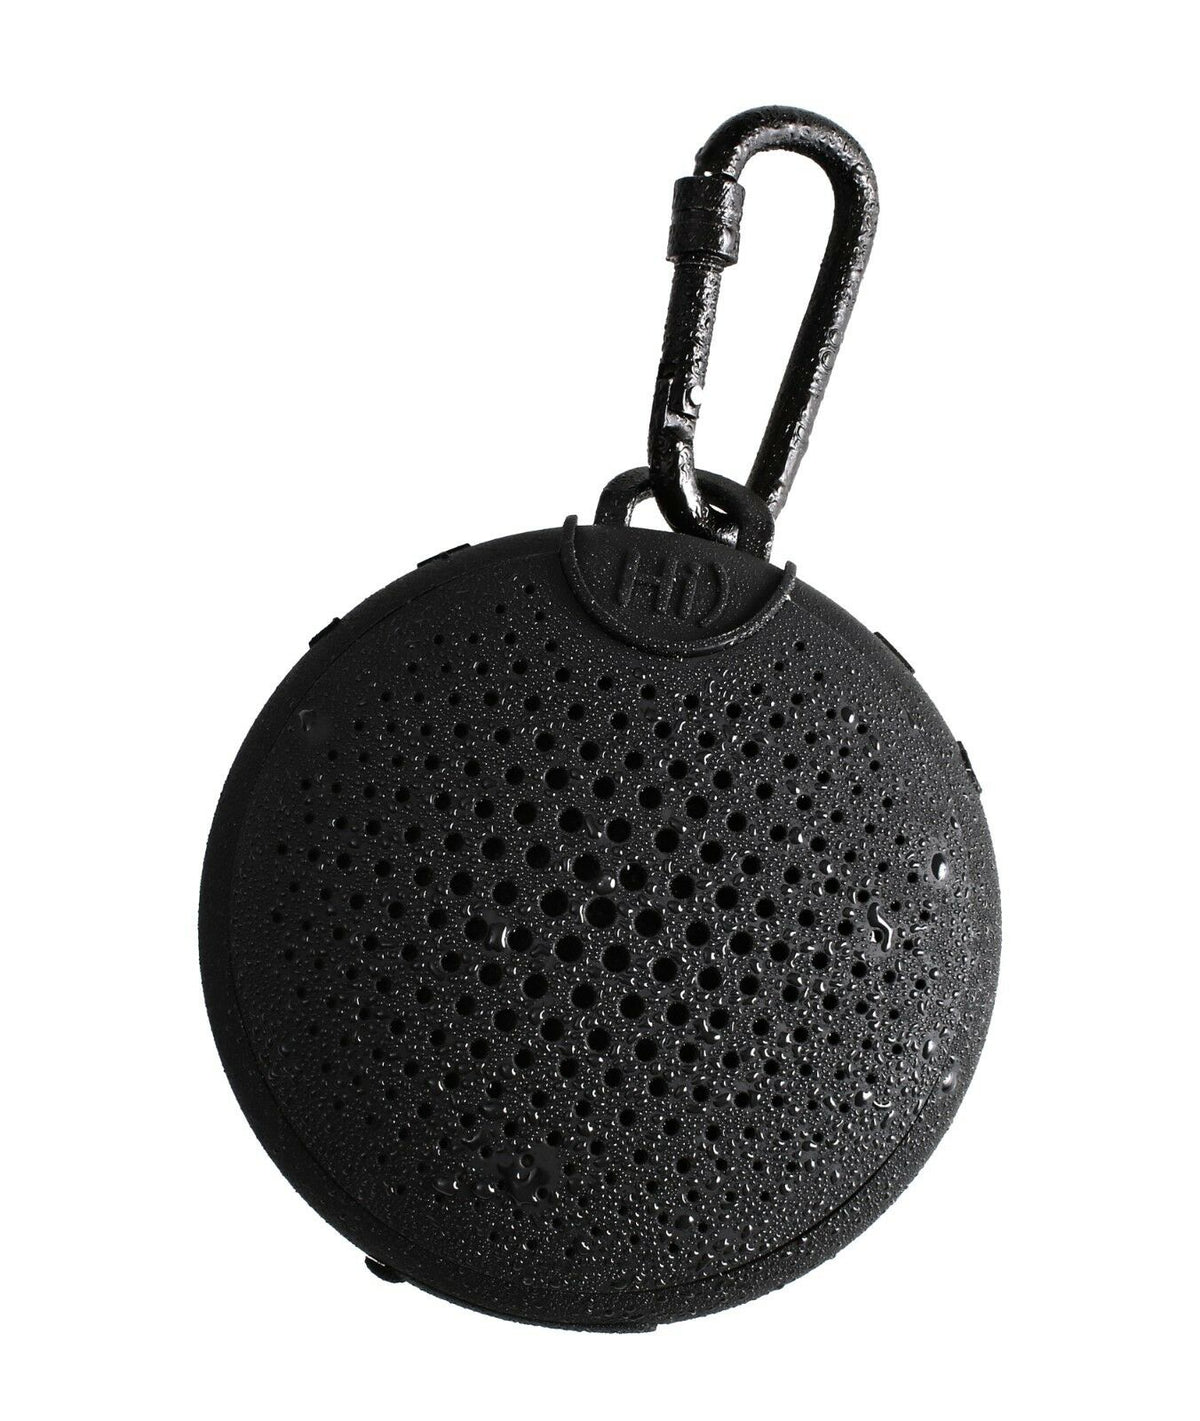 BOOMPODS Aquablaster Bluetooth Speaker - Black